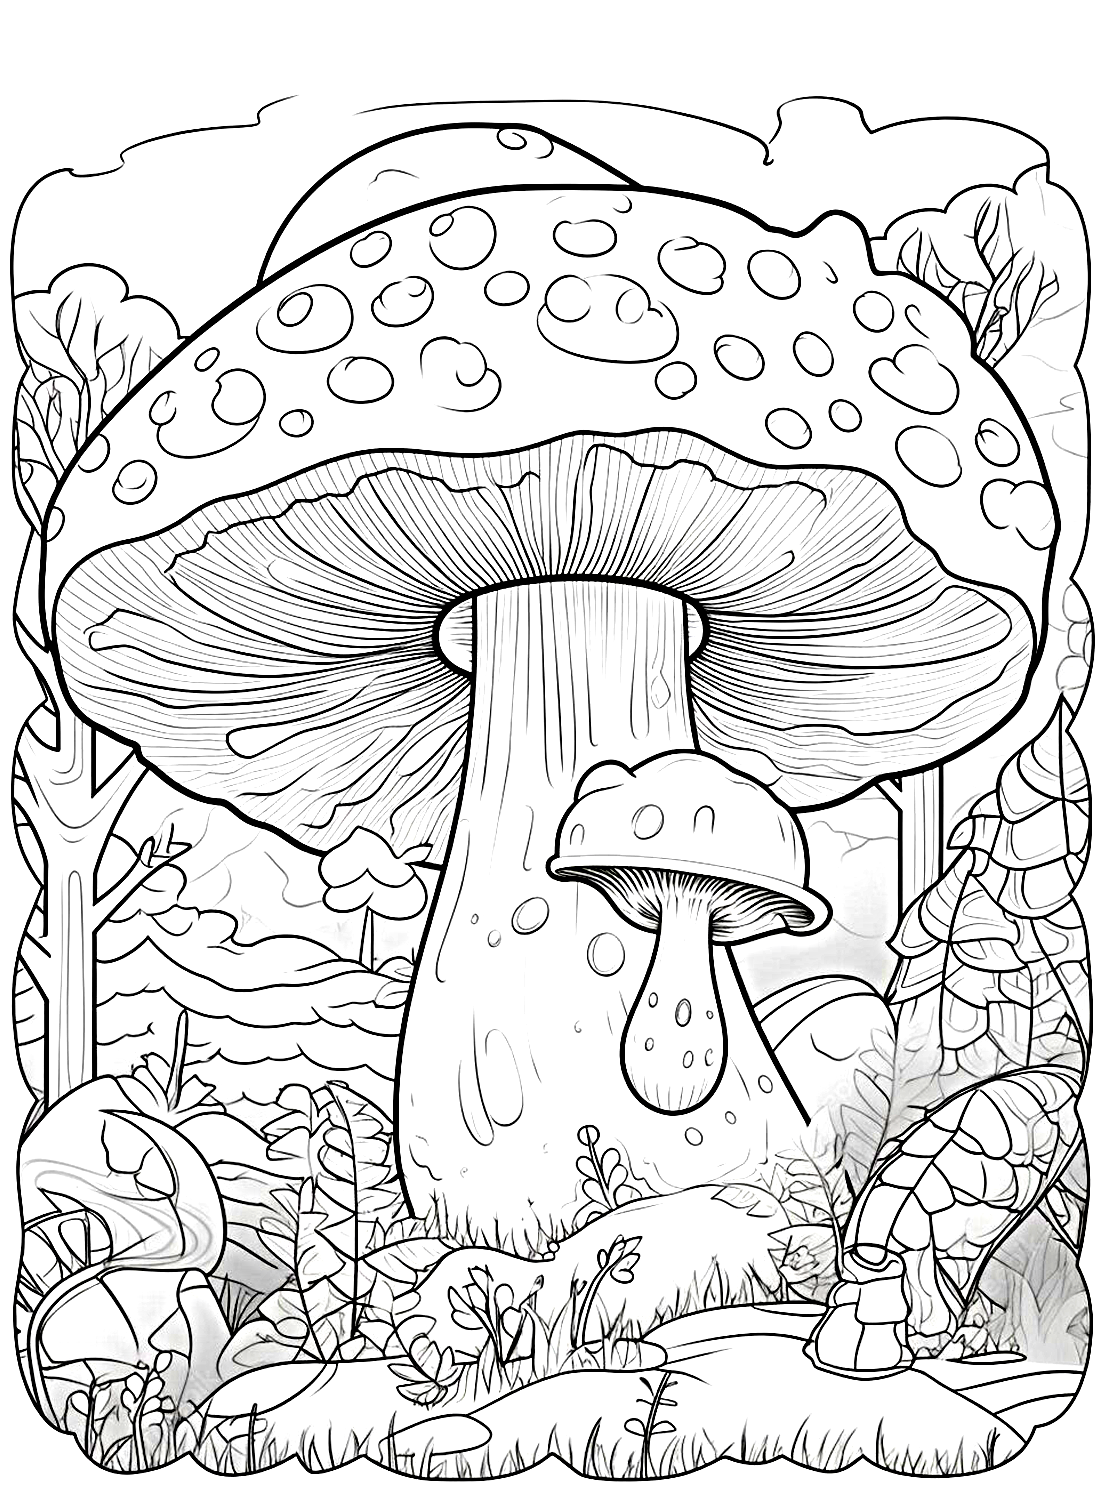 Ein riesiges Pilzbild von Mushroom